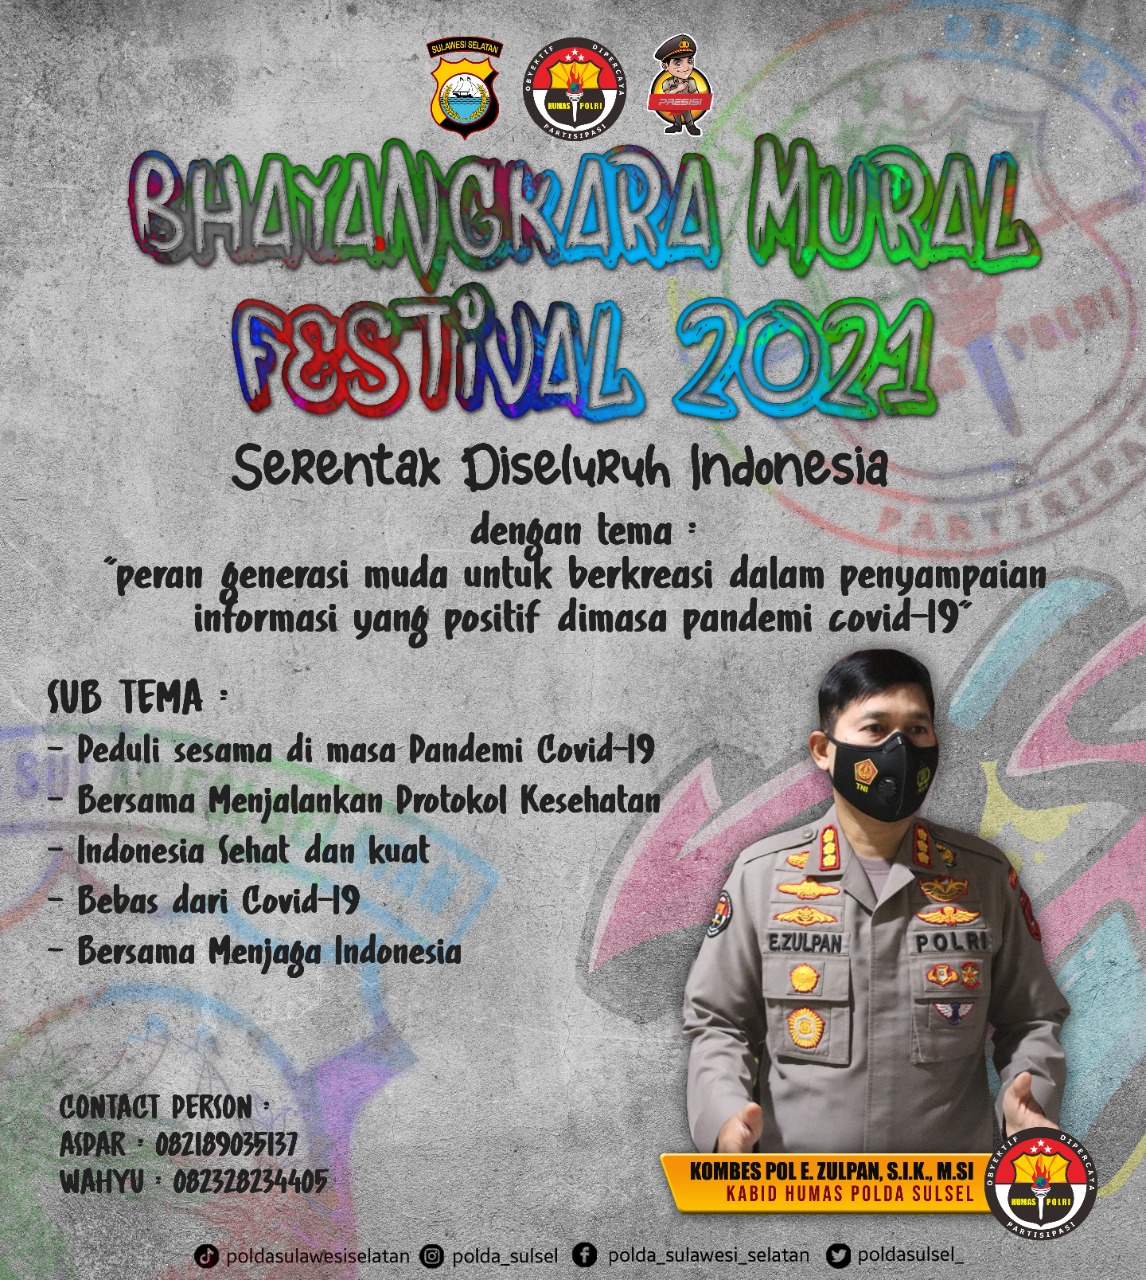 Lomba Bhayangkara Mural Festival 2021 Piala Kapolri Tingkat Polda Sulsel Berhadiah Jutaan Rupiah